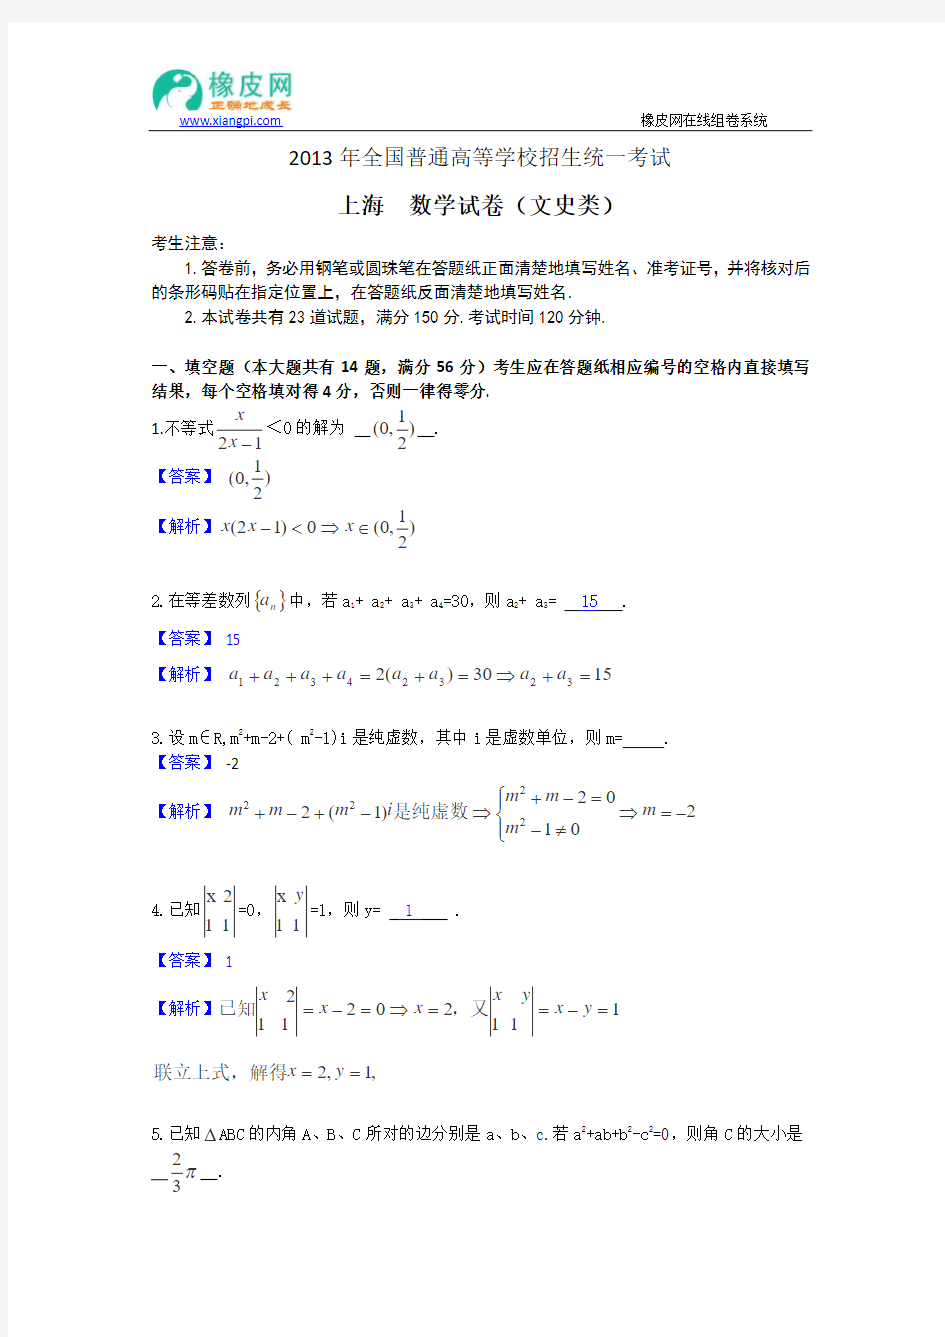 2013年高考真题----文科数学(上海卷)解析版 Word版含答案